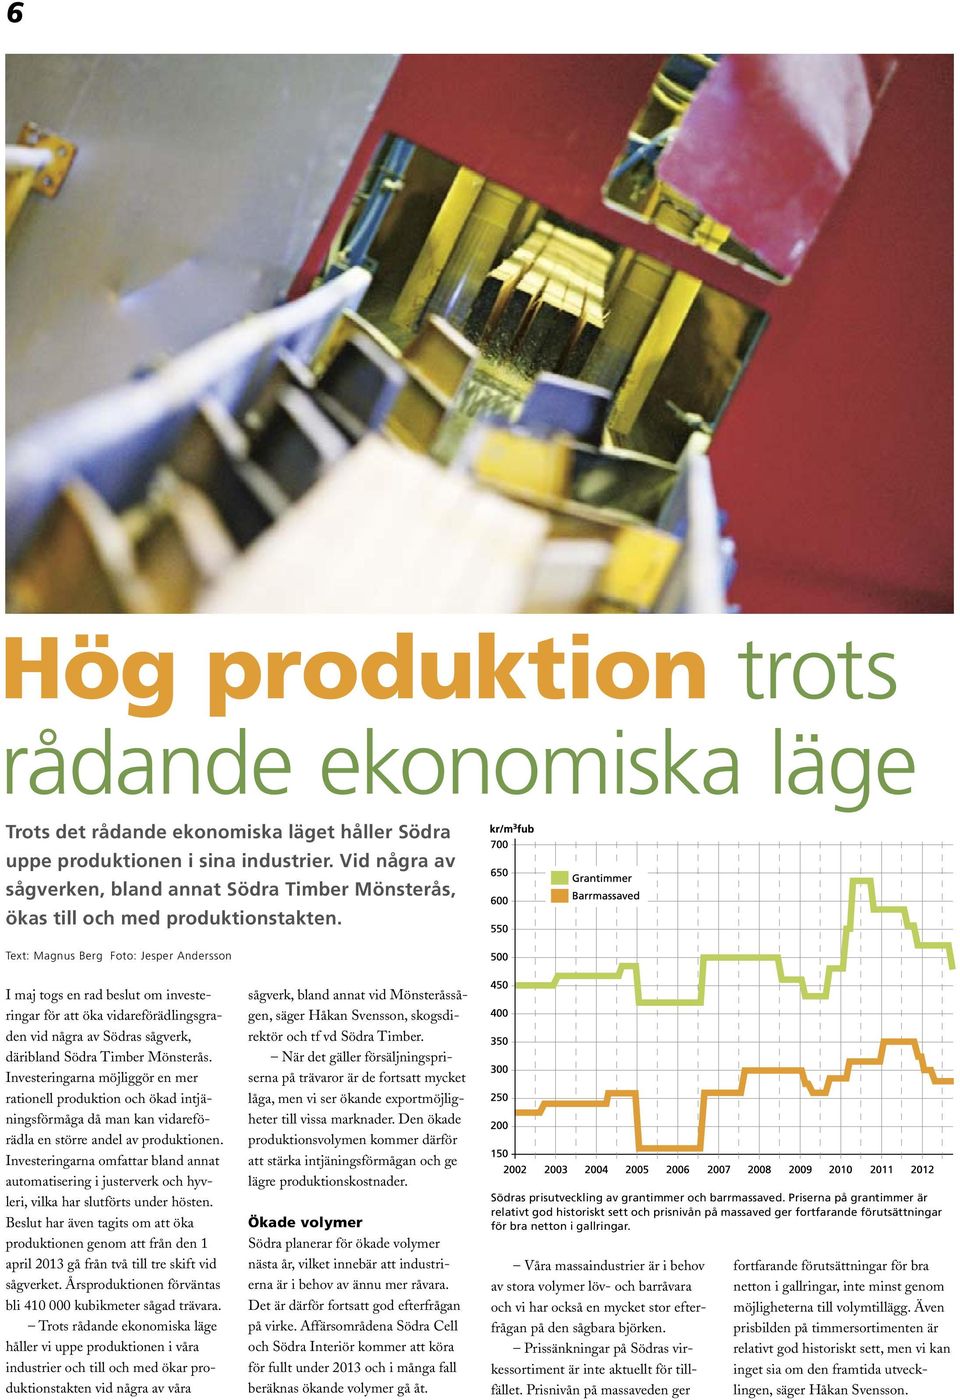 Text: Magnus Berg Foto: Jesper Andersson I maj togs en rad beslut om investeringar för att öka vidareförädlingsgraden vid några av Södras sågverk, däribland Södra Timber Mönsterås.